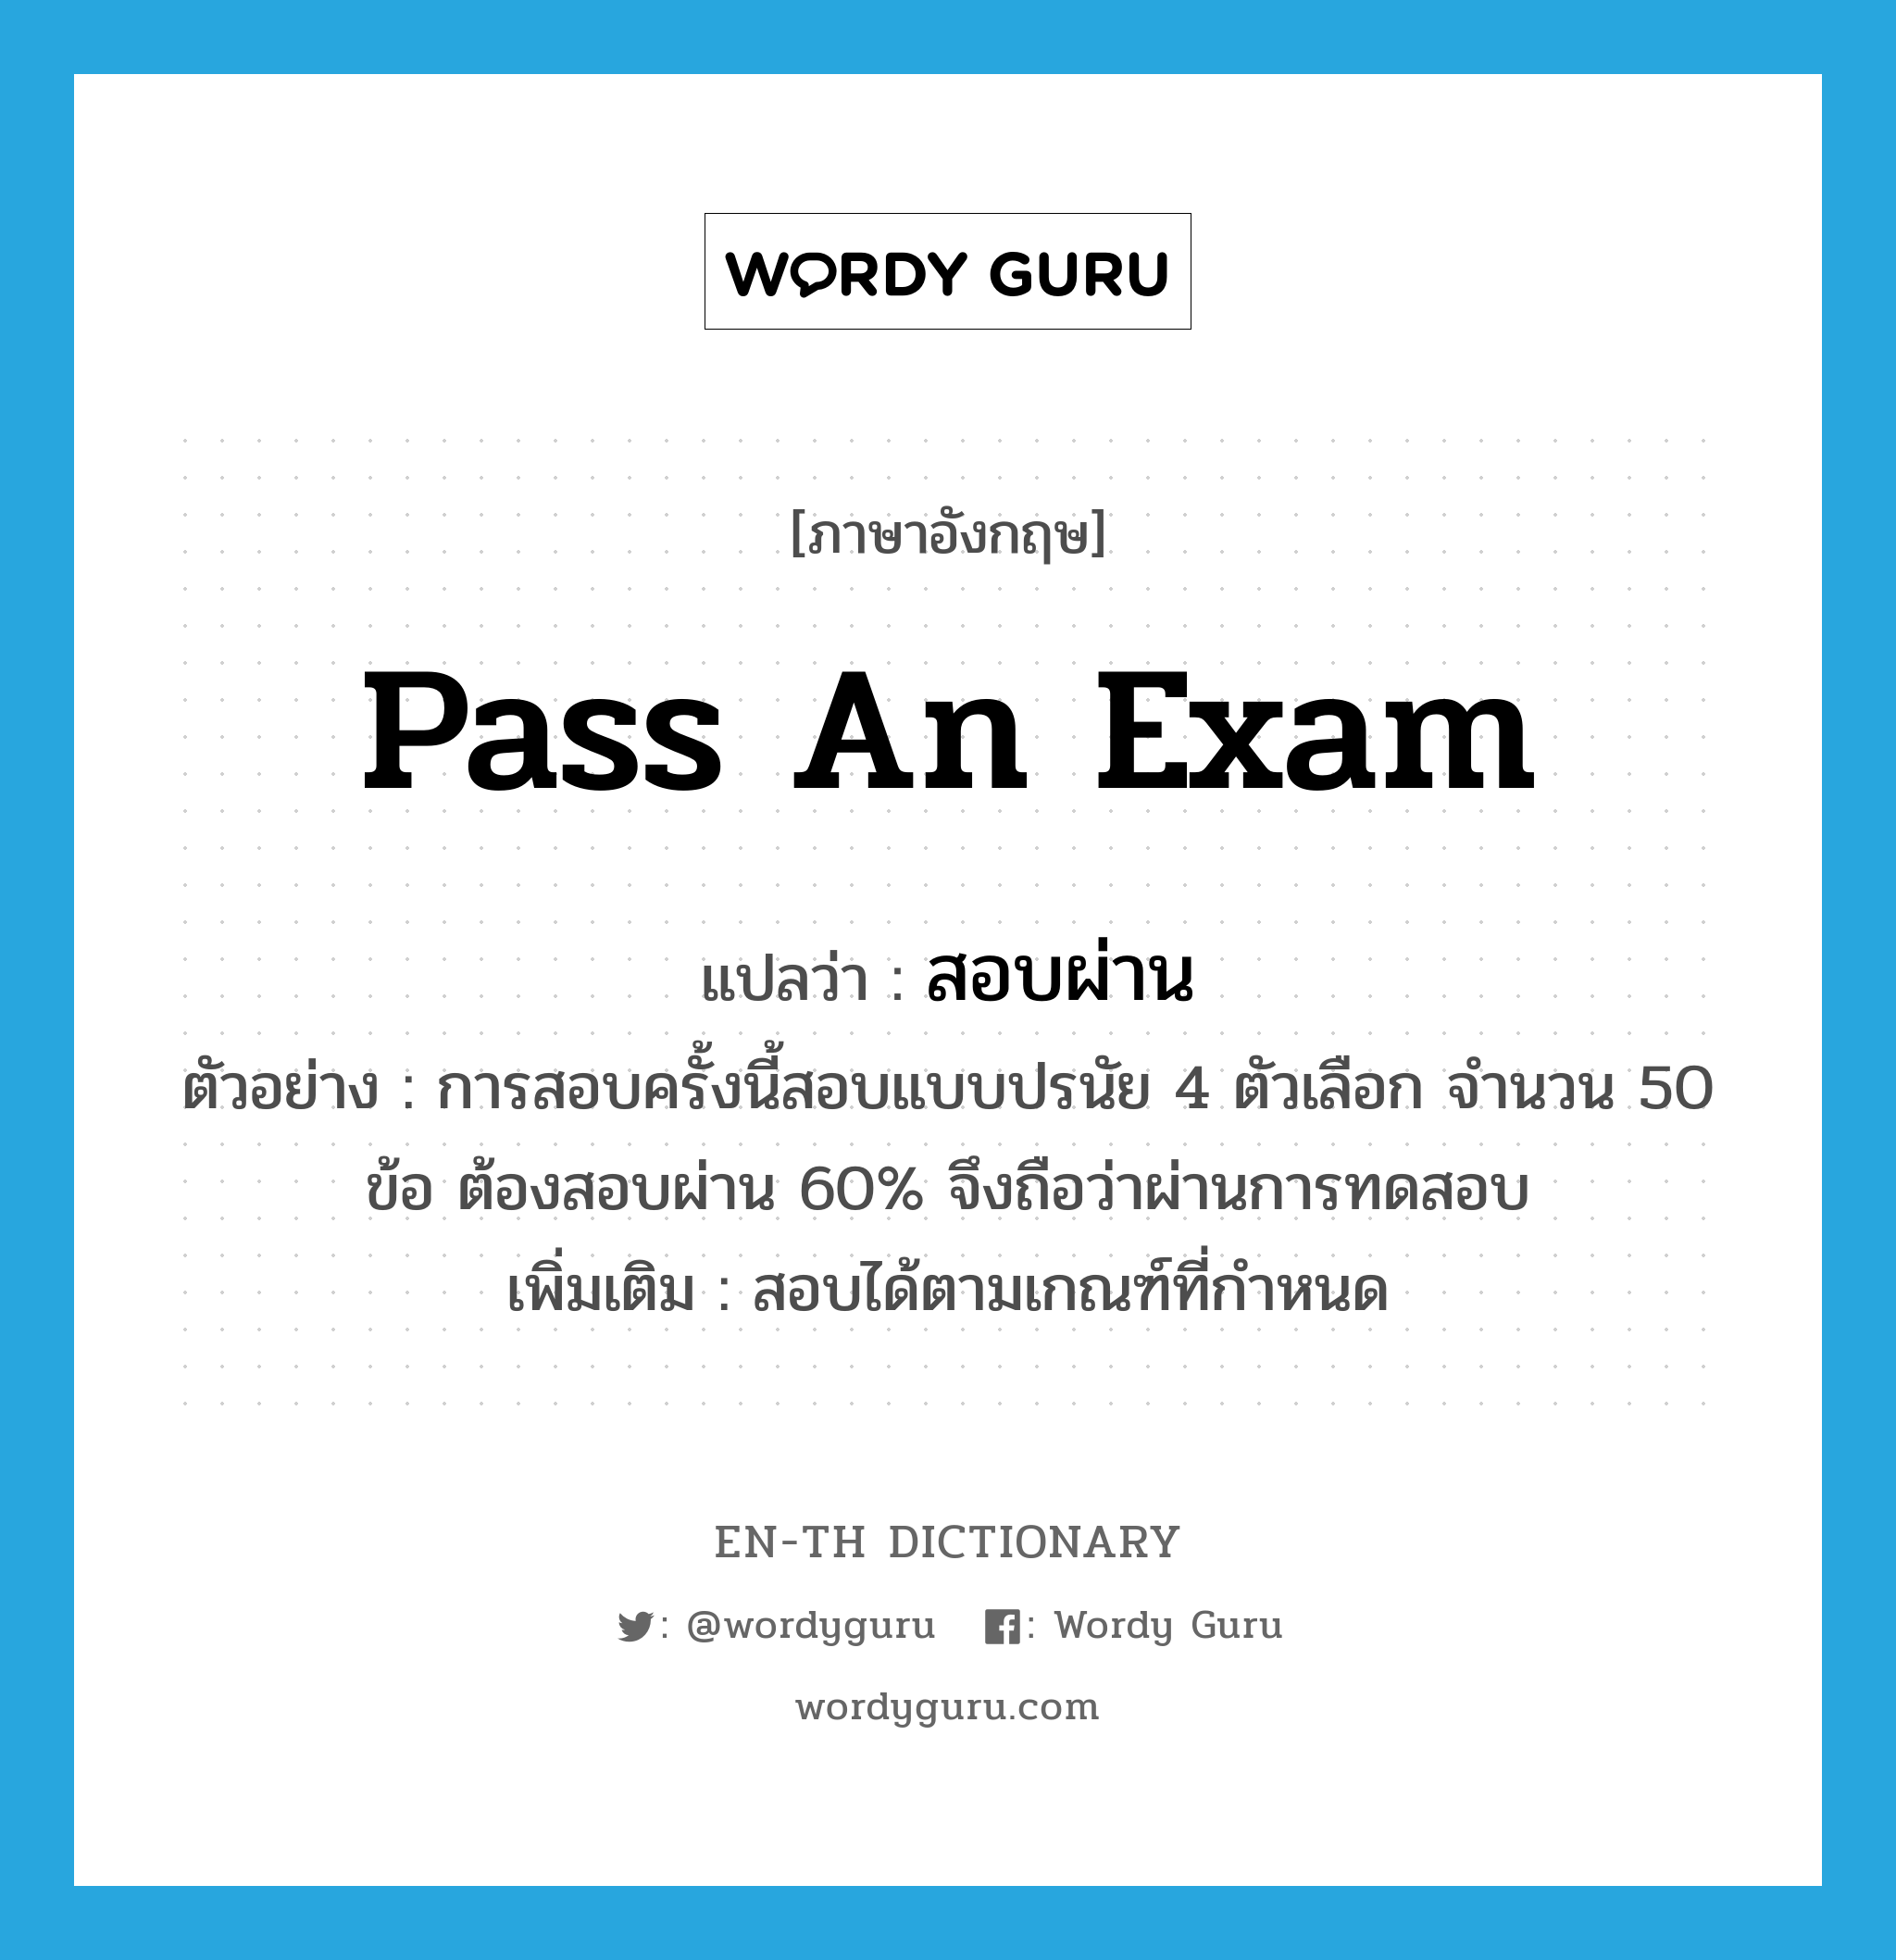 pass an exam แปลว่า?, คำศัพท์ภาษาอังกฤษ pass an exam แปลว่า สอบผ่าน ประเภท V ตัวอย่าง การสอบครั้งนี้สอบแบบปรนัย 4 ตัวเลือก จำนวน 50 ข้อ ต้องสอบผ่าน 60% จึงถือว่าผ่านการทดสอบ เพิ่มเติม สอบได้ตามเกณฑ์ที่กำหนด หมวด V